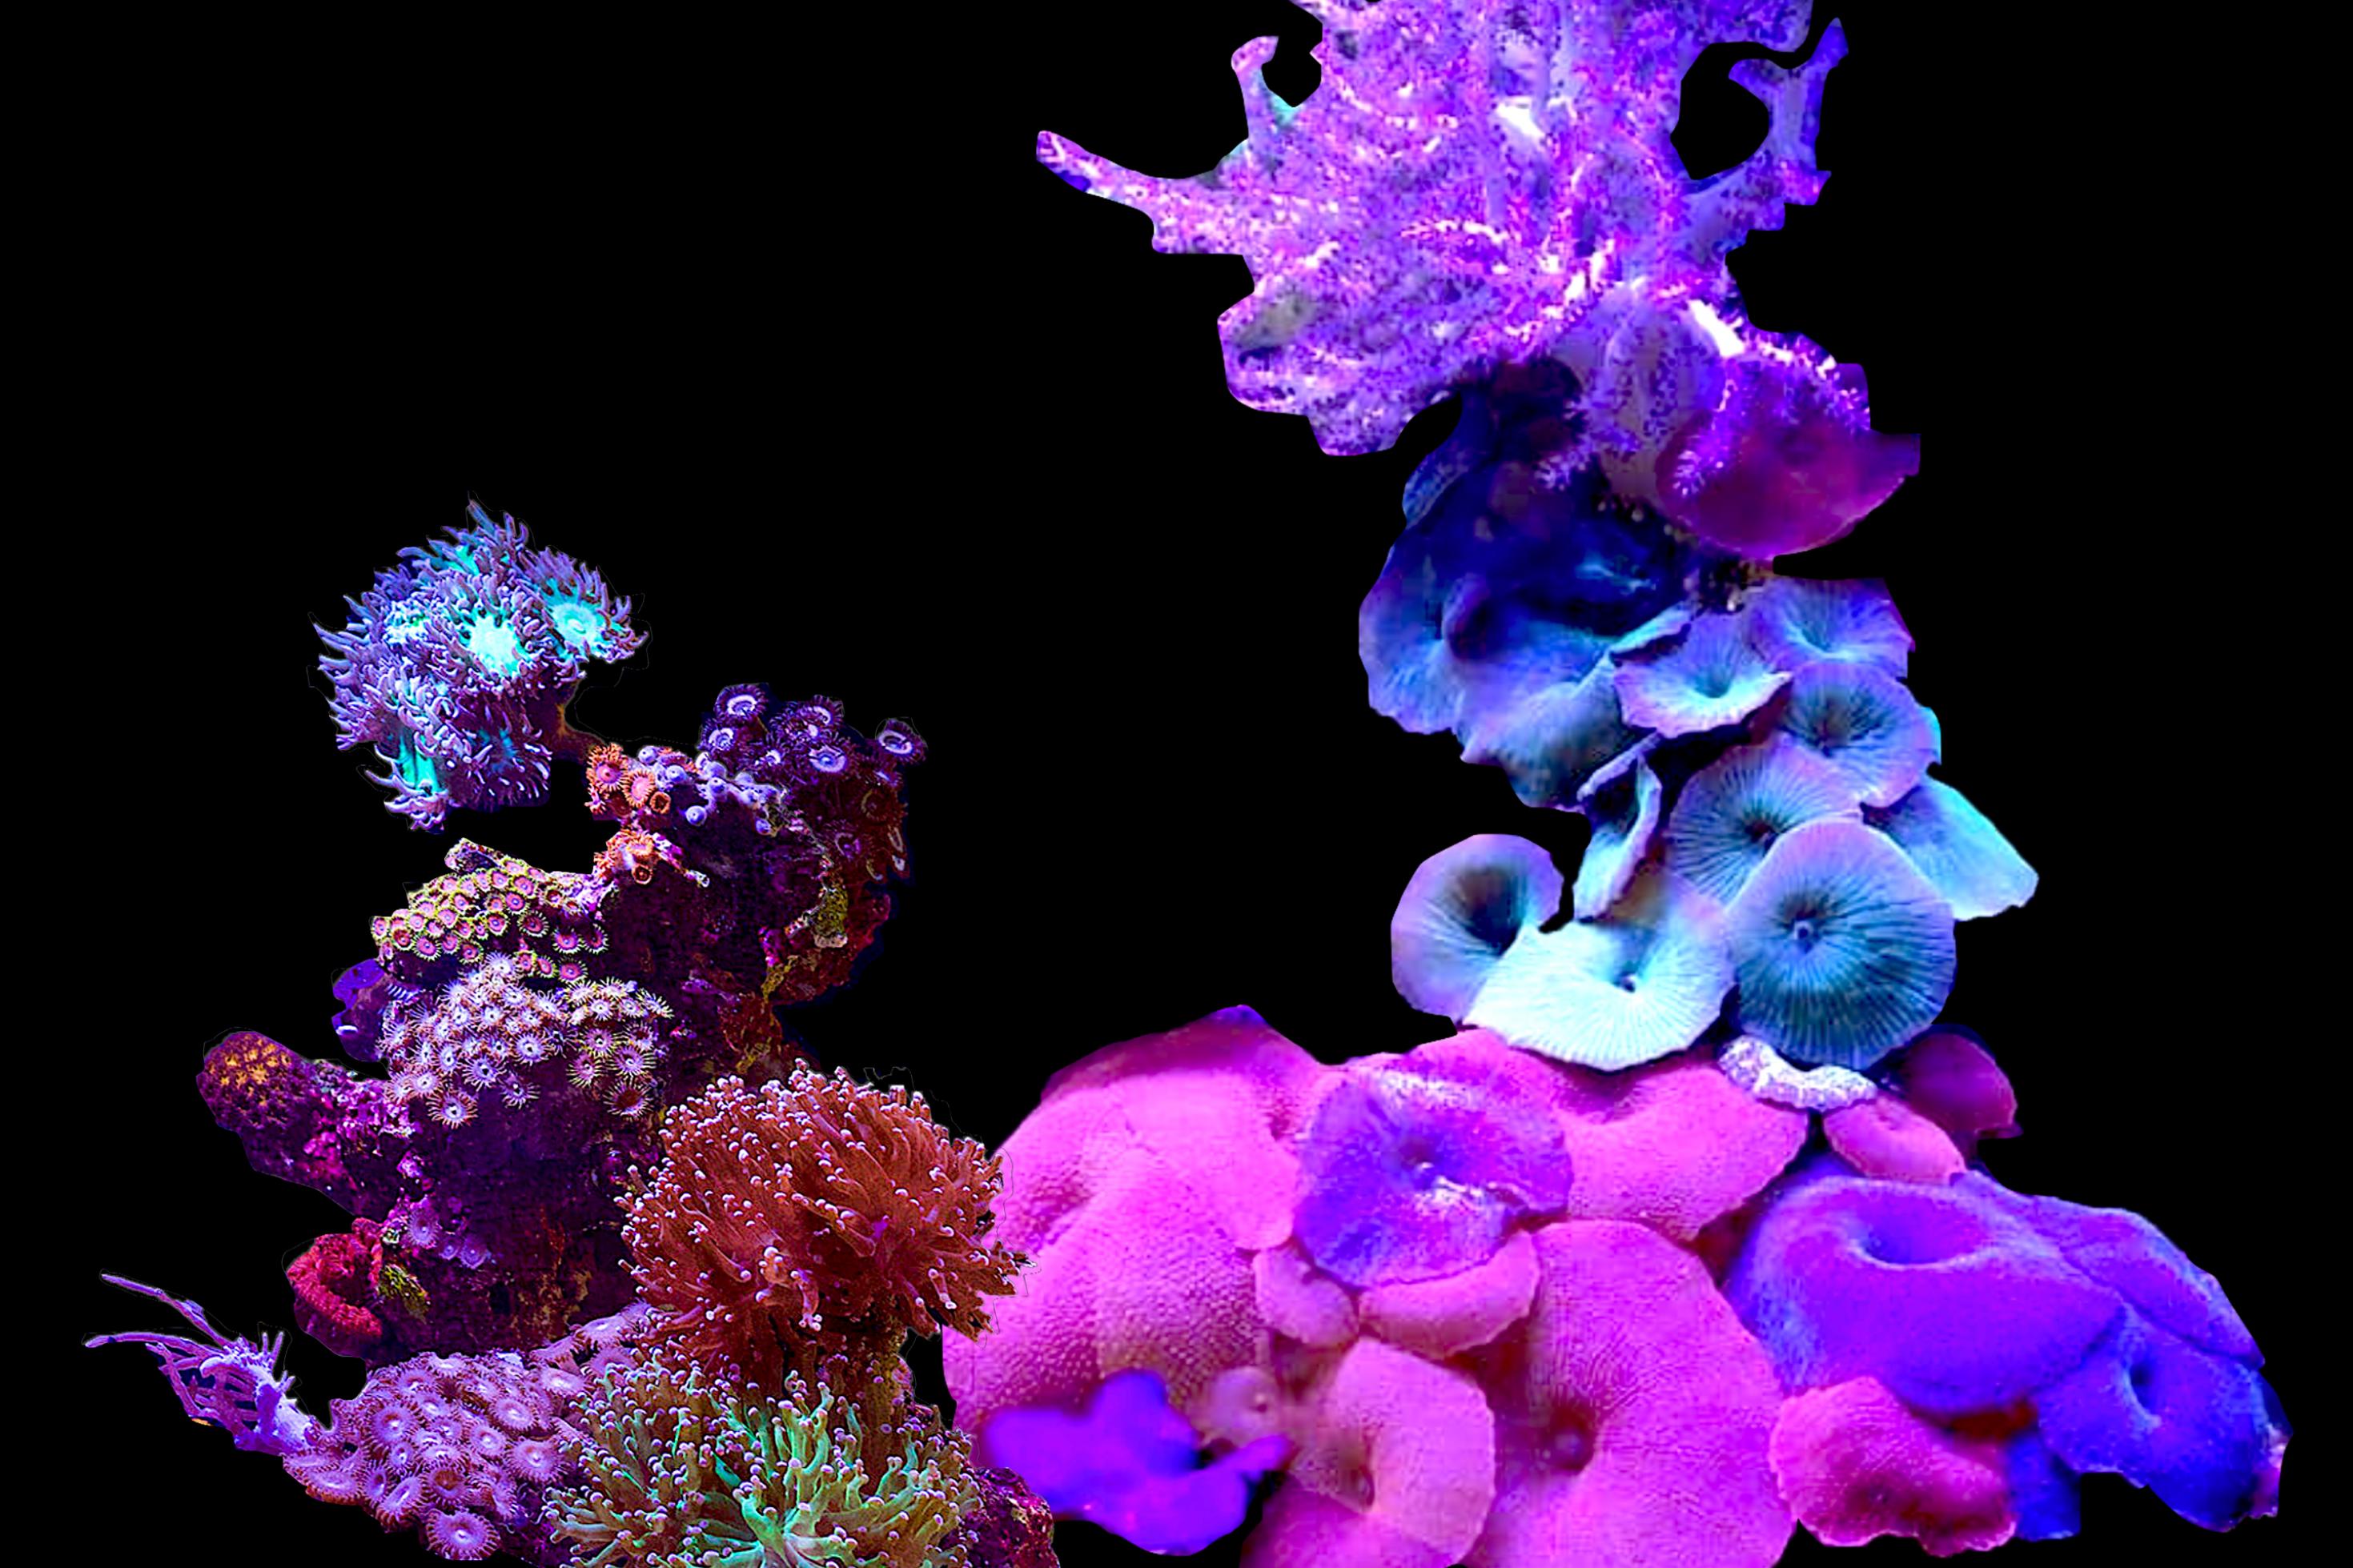 Collage aus violett-blauen und pinkfarbigen gehäckelten Korallen.